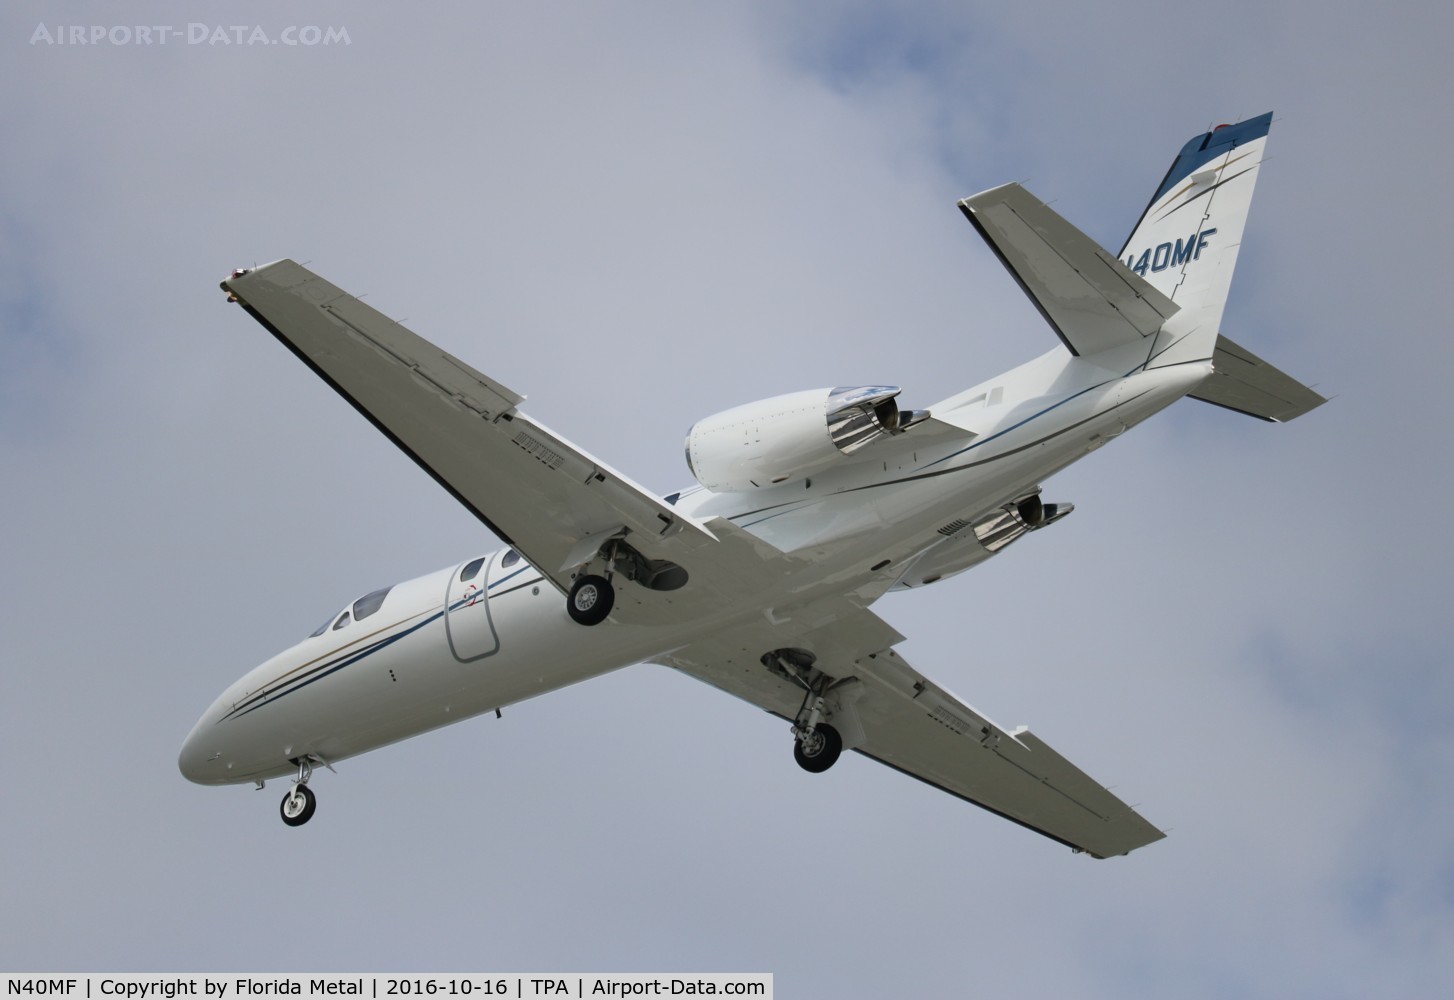 N40MF, 2000 Cessna 550 C/N 550-0921, Citation II